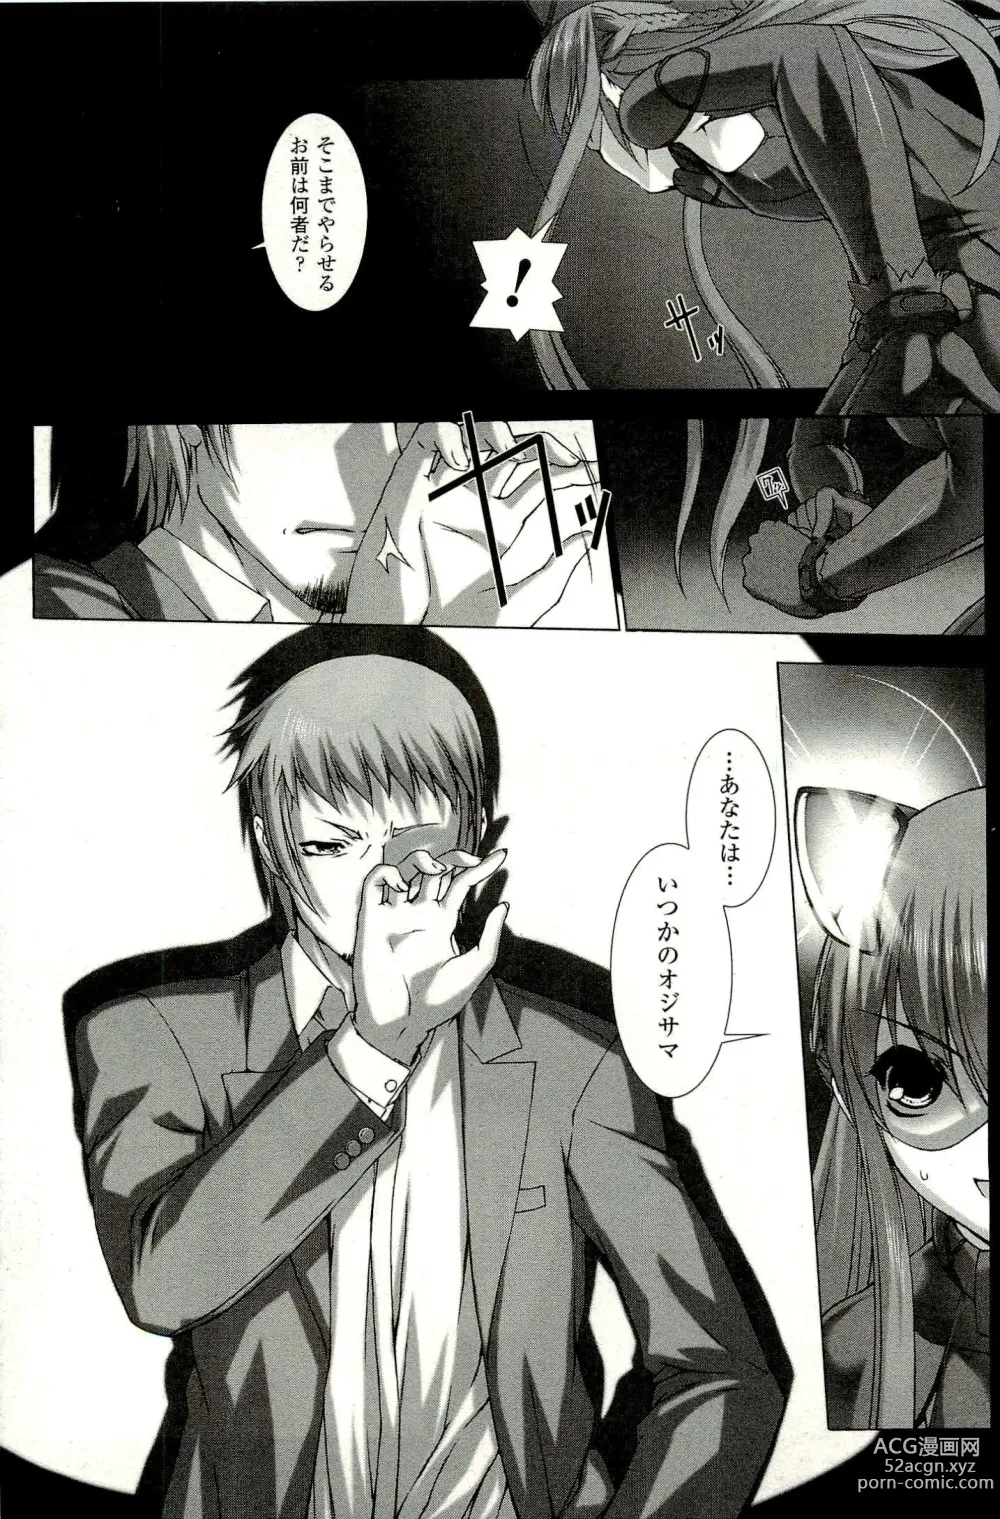 Page 19 of manga Ziggurat 1